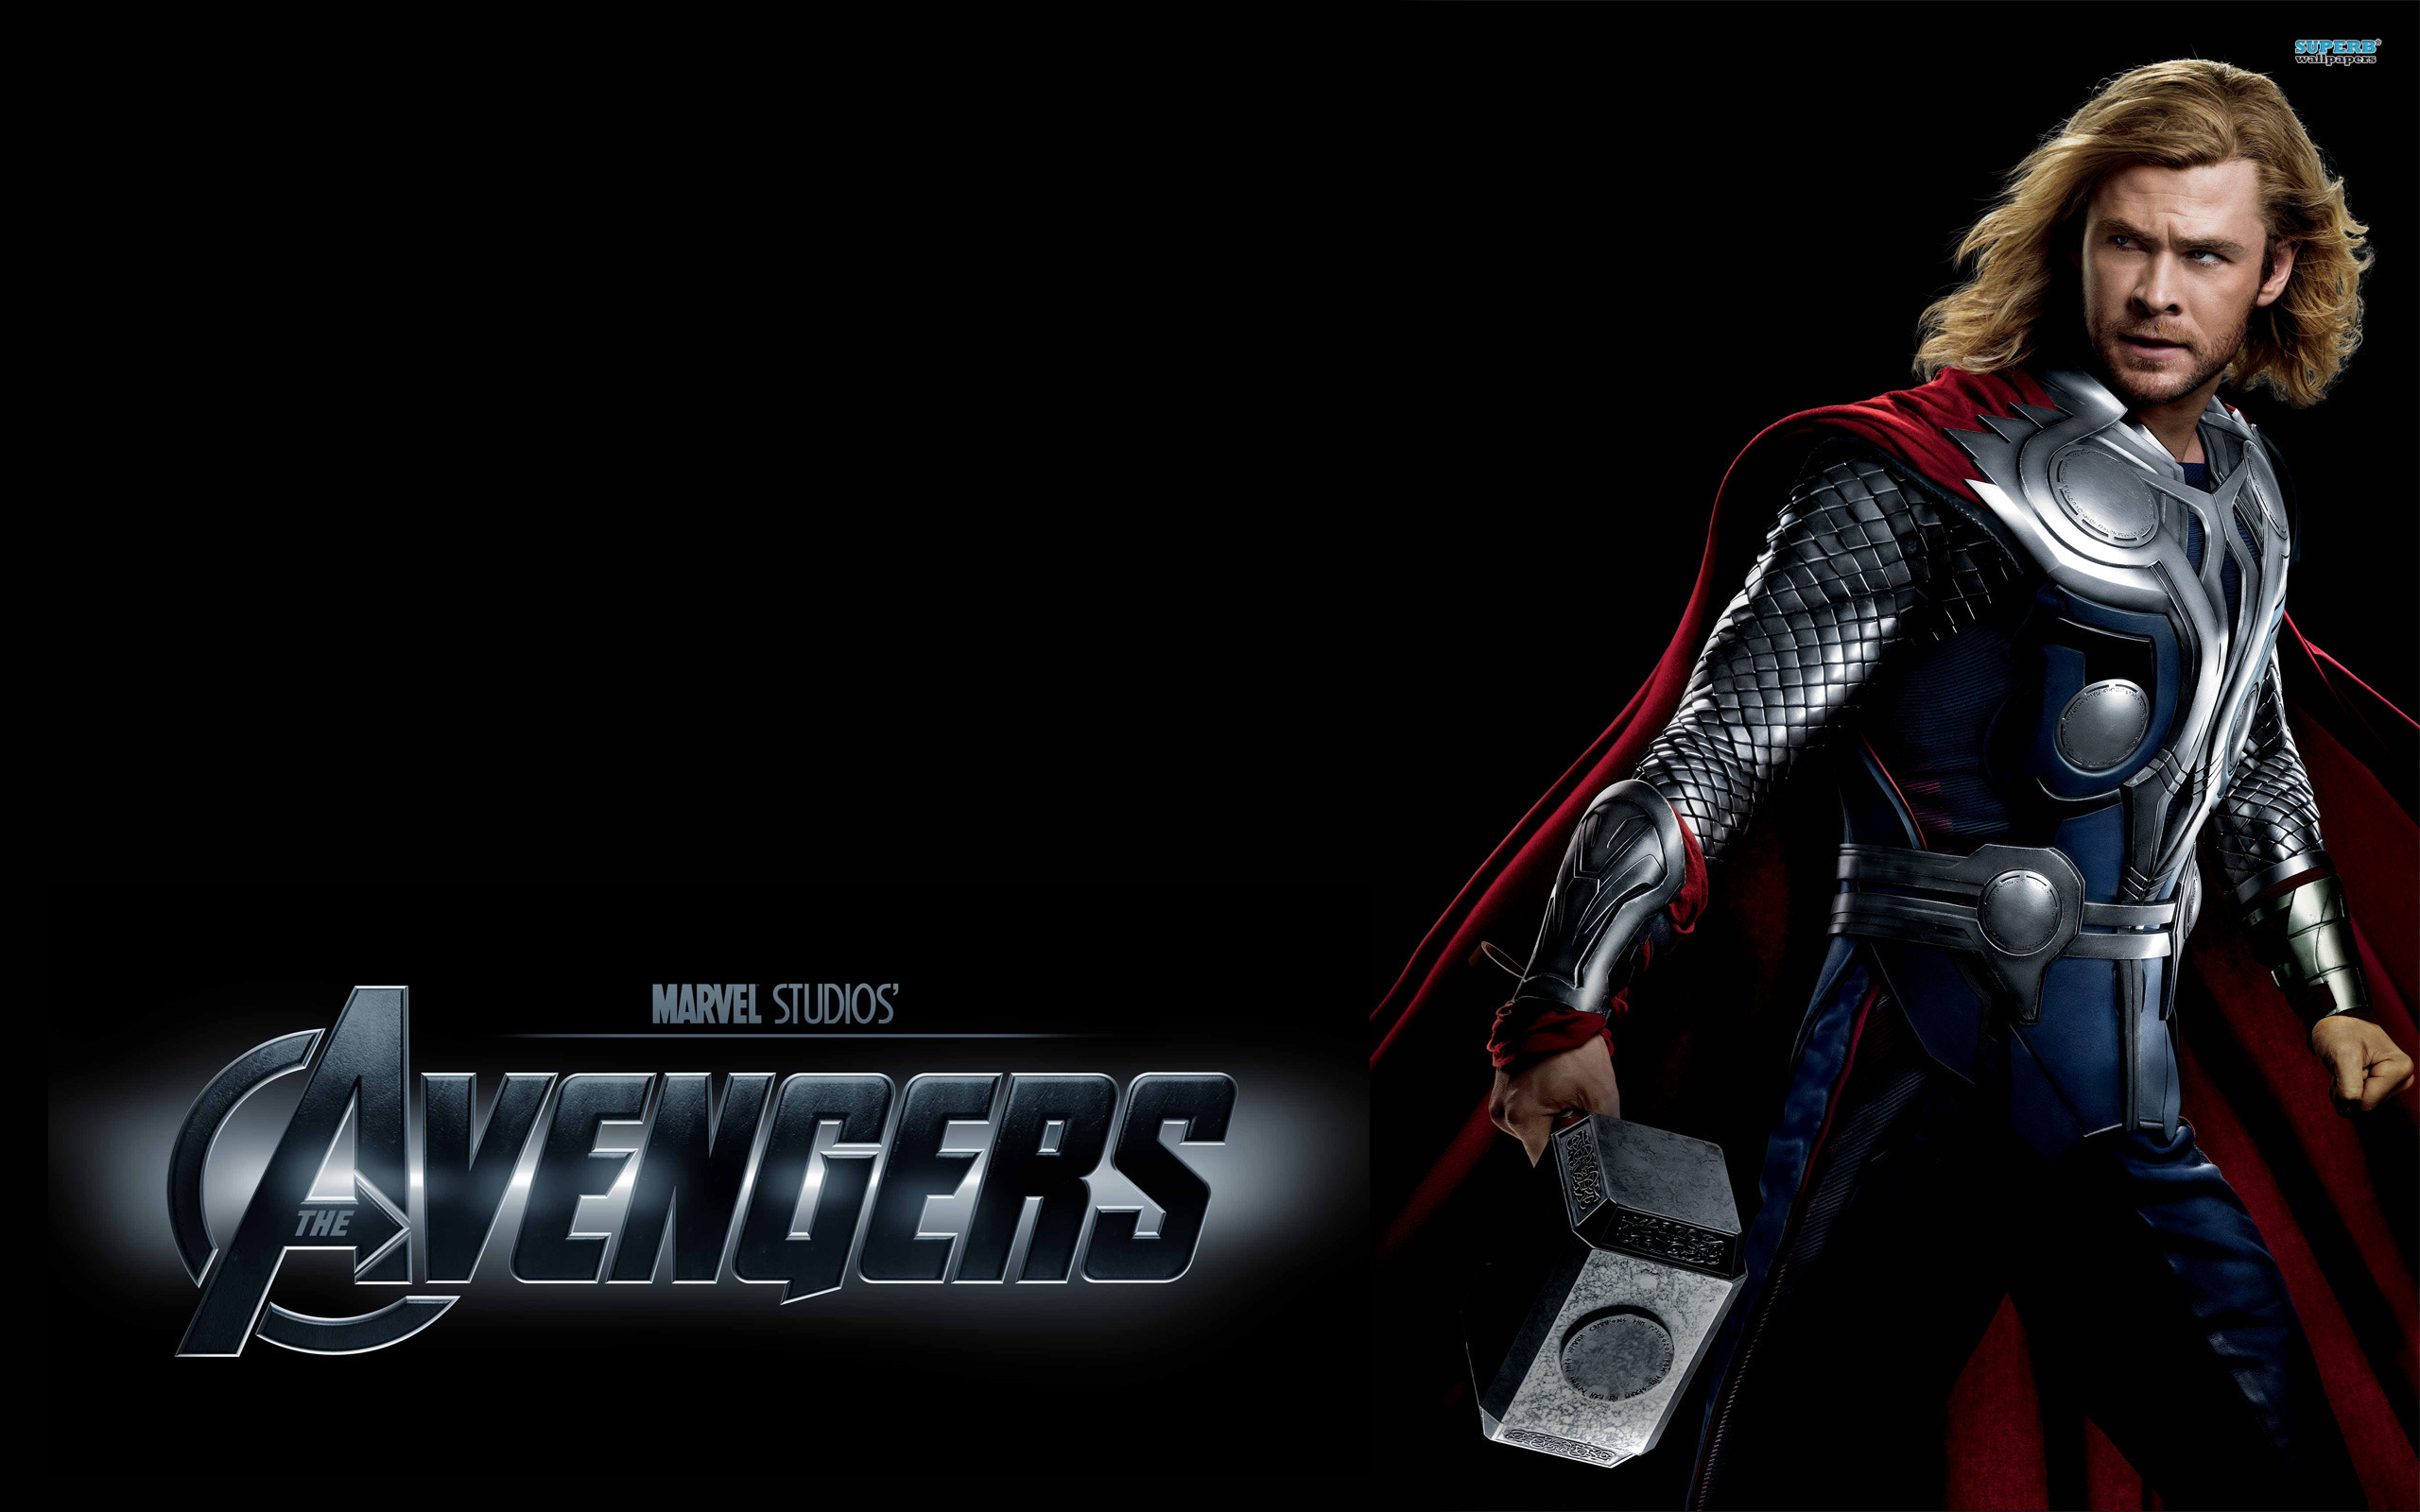 Thor - The Avengers wallpaper 2560x1600 jpg